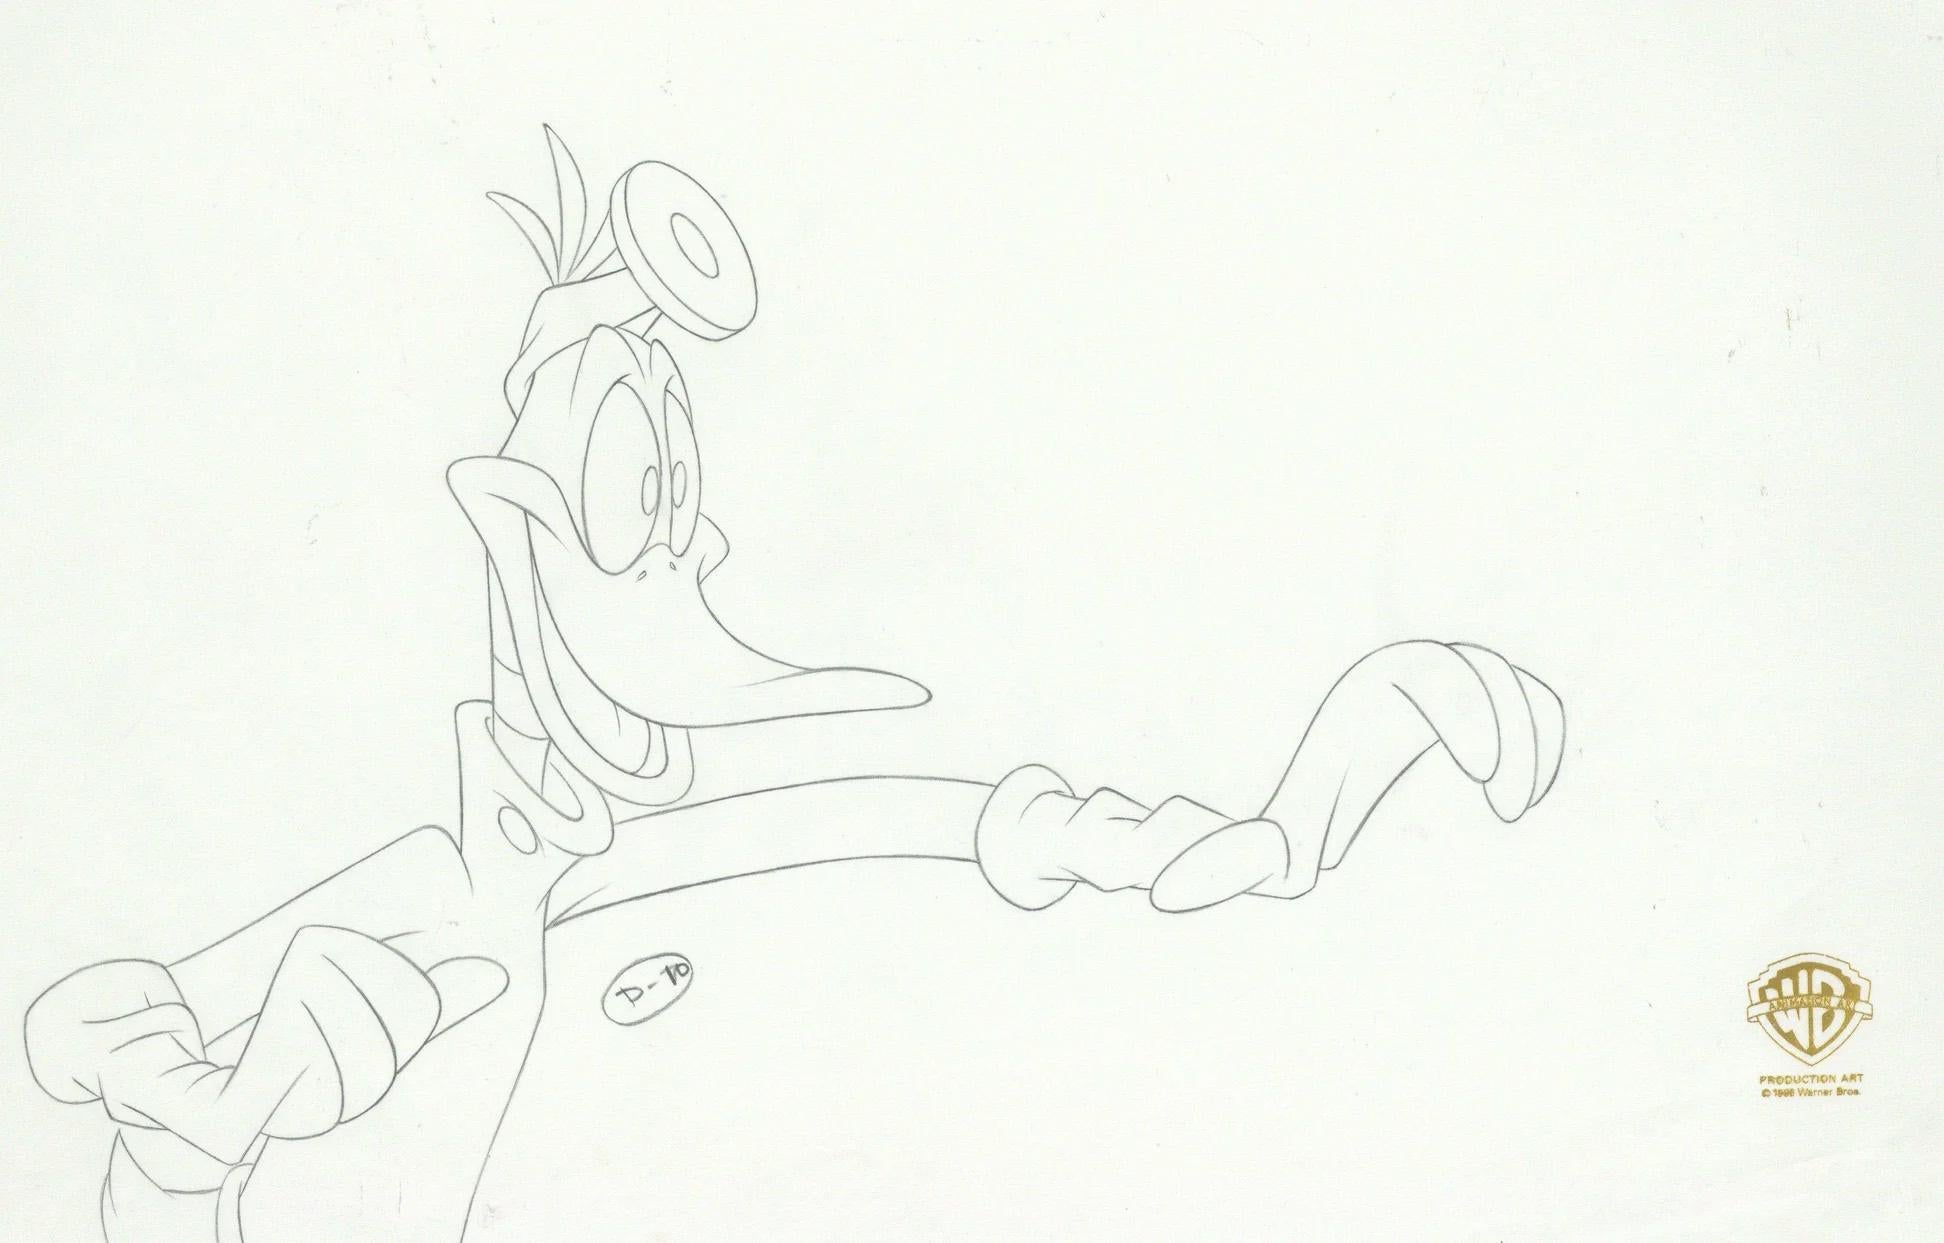 Space Jam Original-Produktionszeichnung: Daffy Duck – Art von Looney Tunes Studio Artists